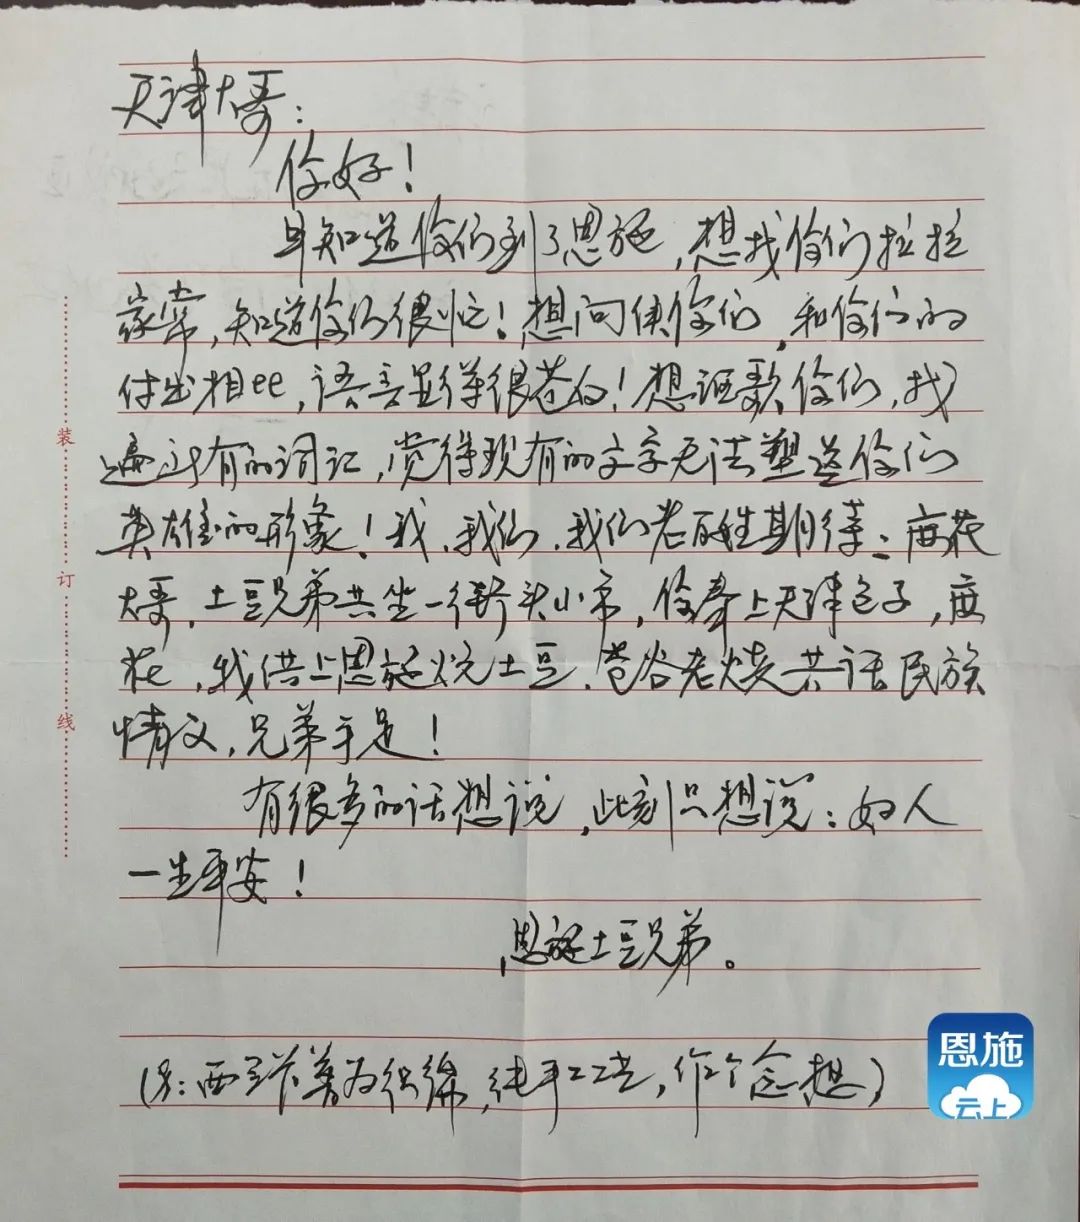 还有一封给天津医疗队的手写感谢信 信的落款是恩施土豆兄弟!